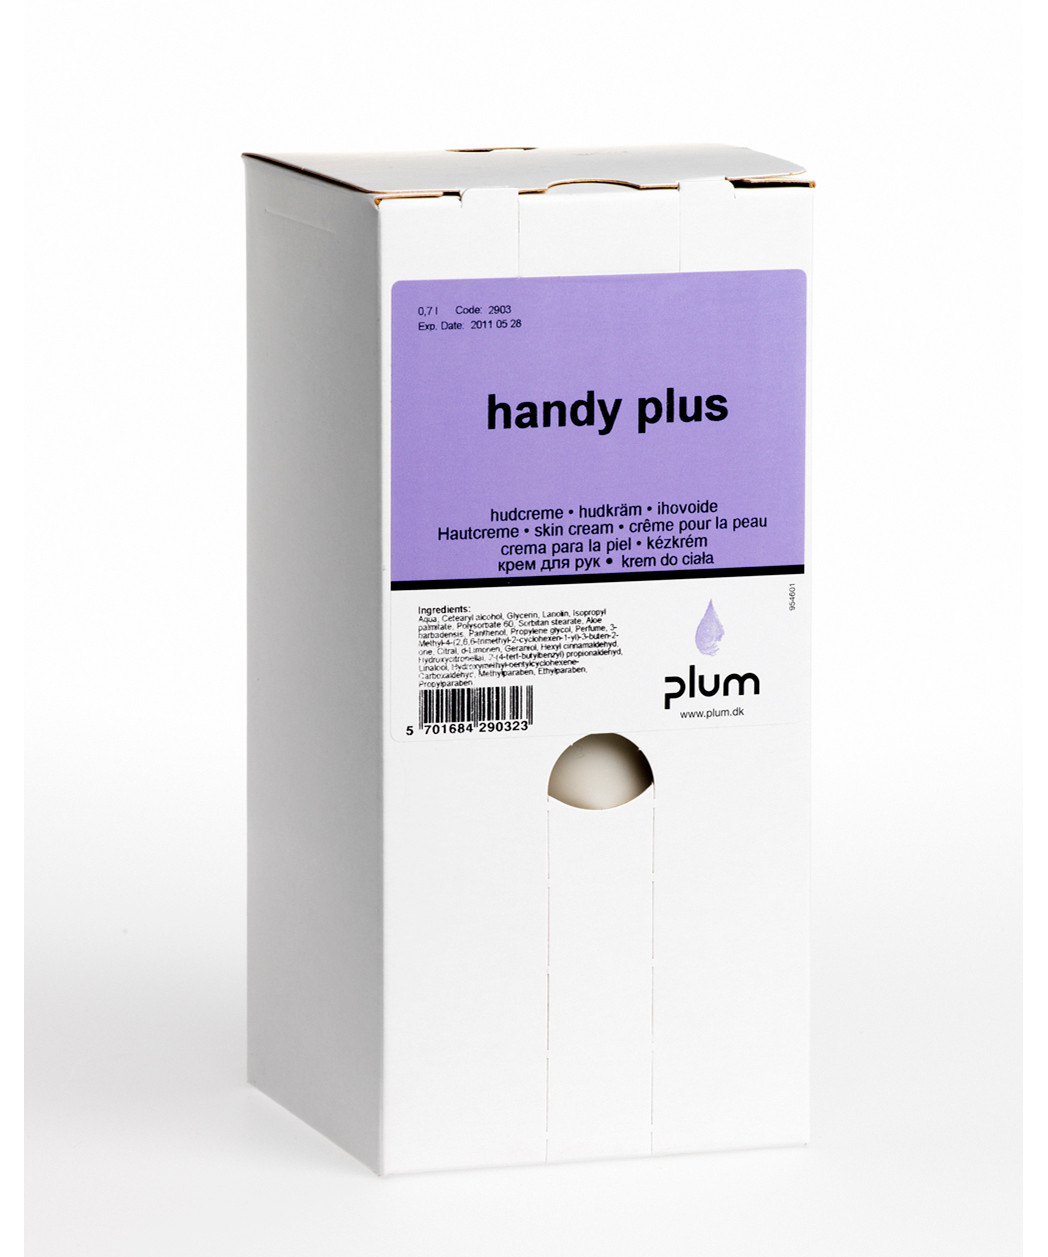 Se Plum Handy Plus hudplejecreme 0,7L hos Specialbutikken